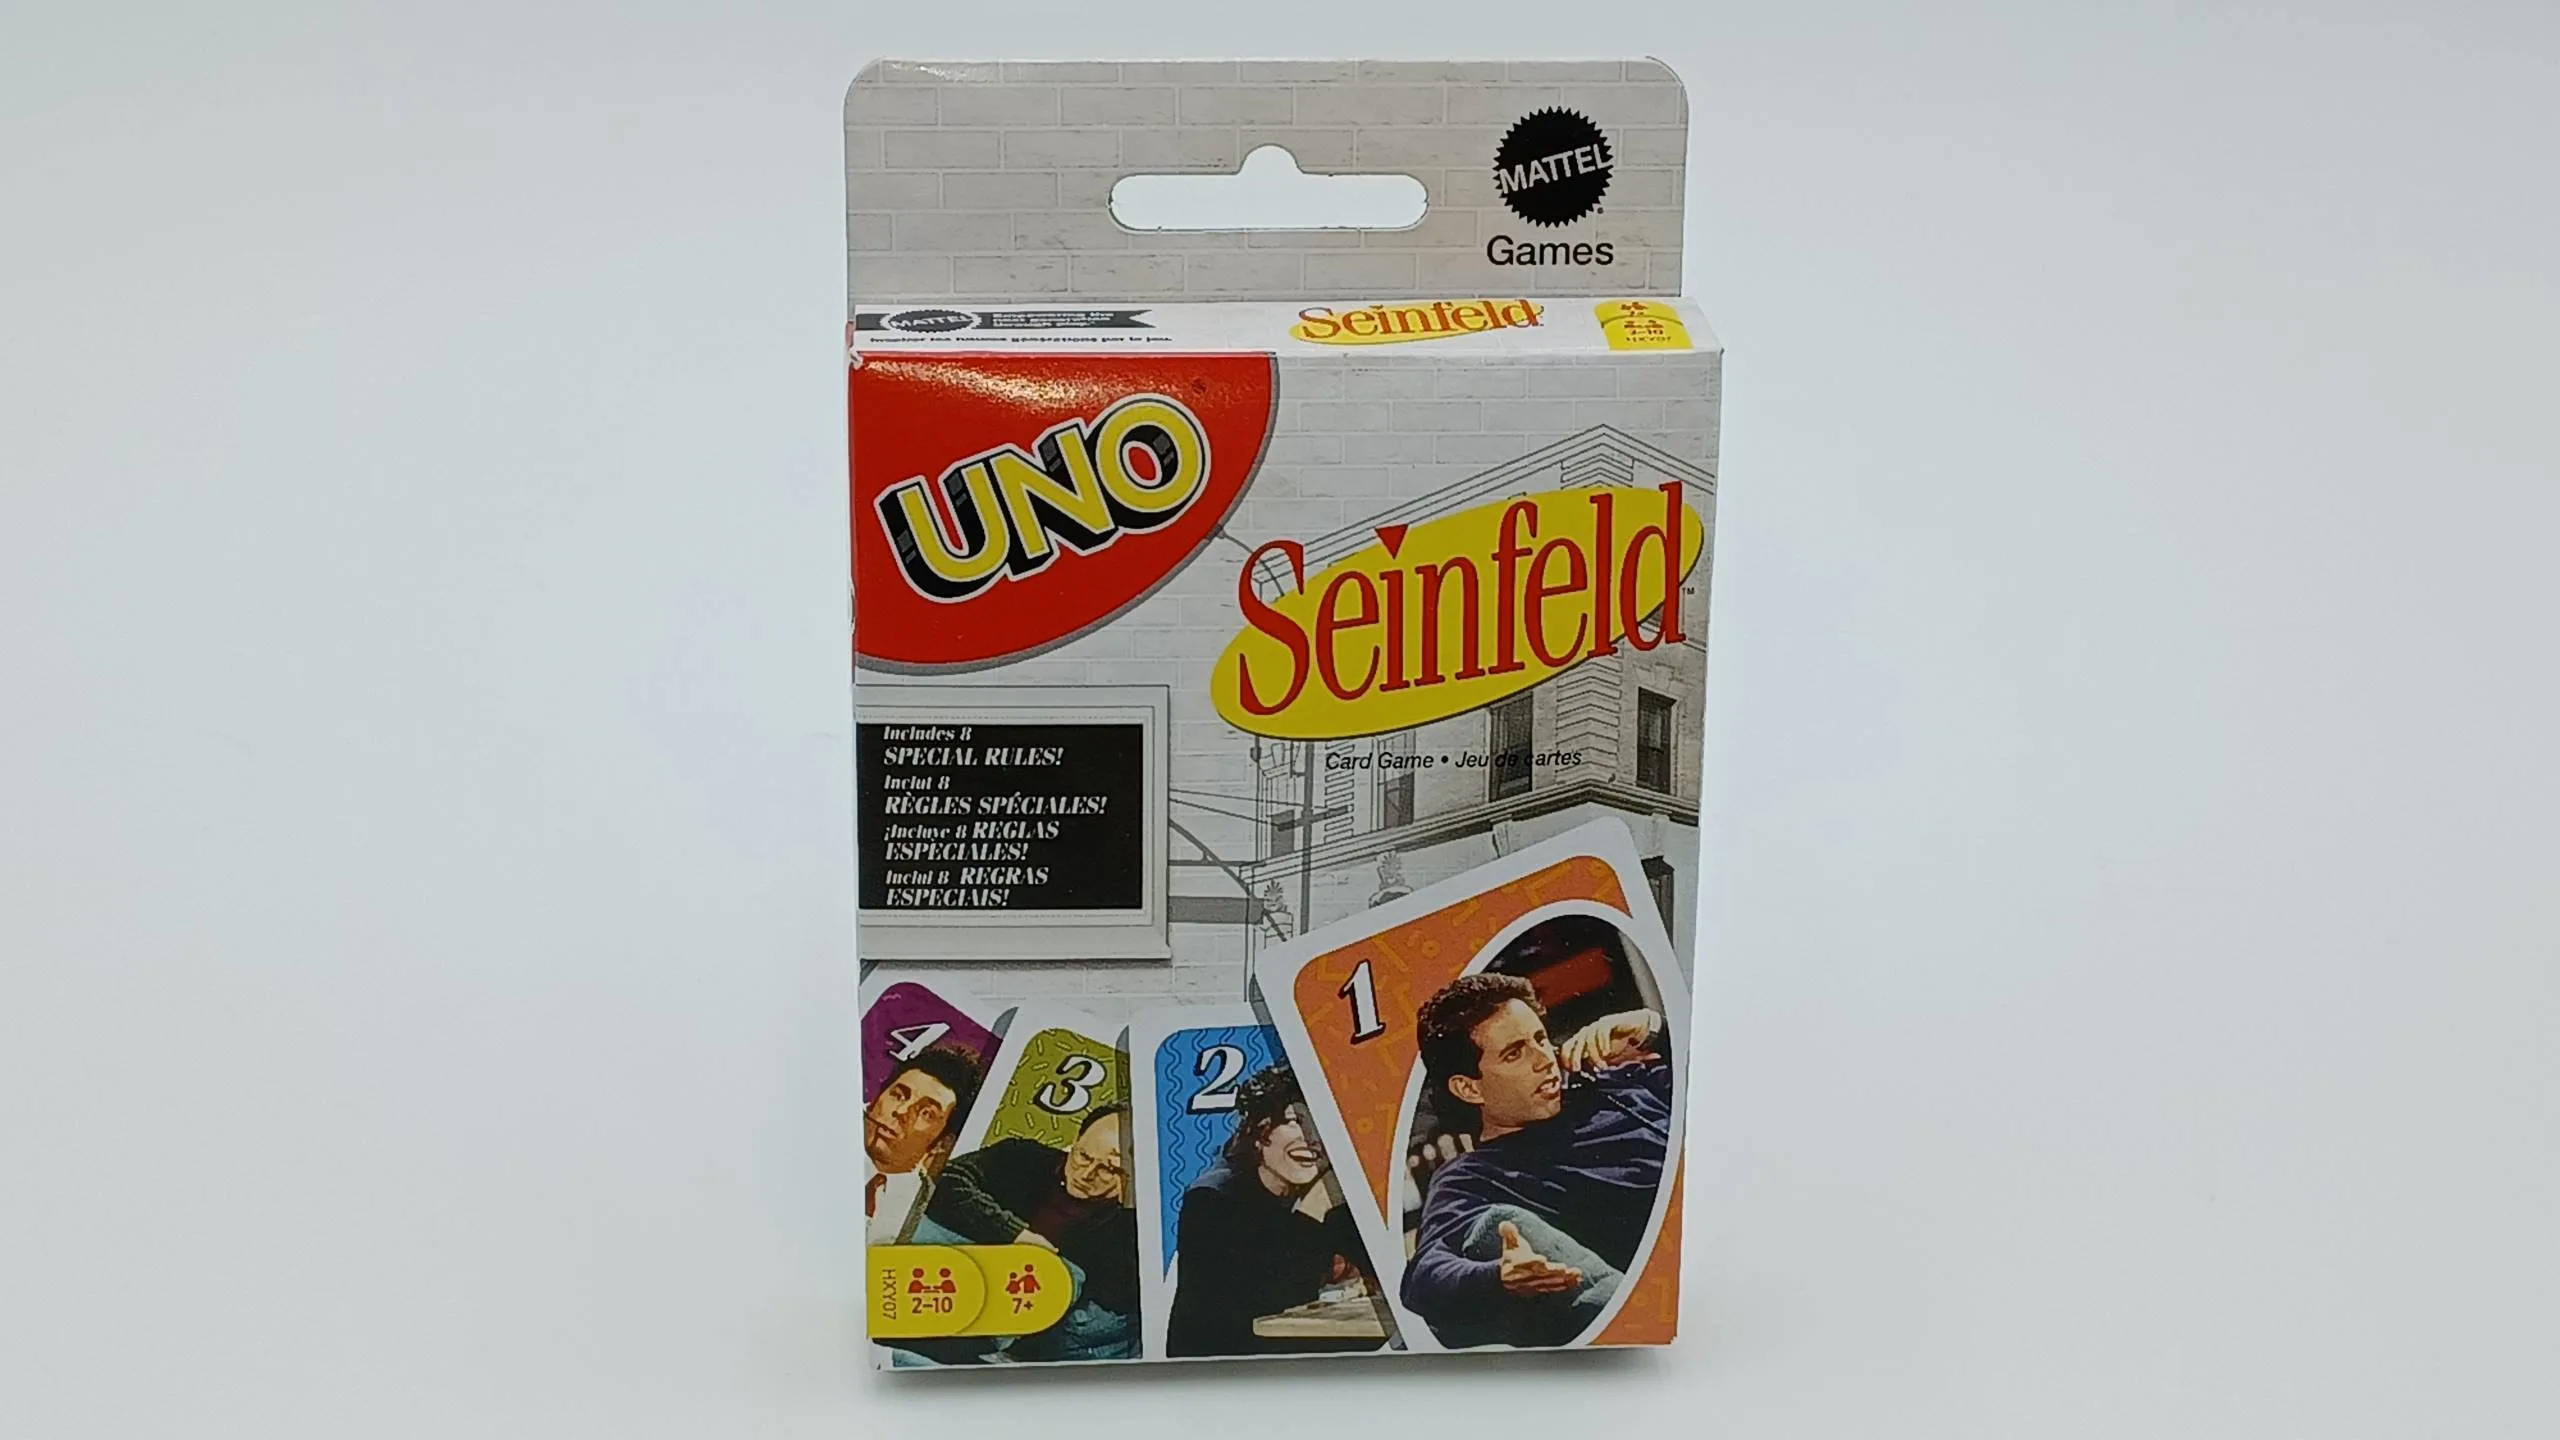 Box for UNO Seinfeld